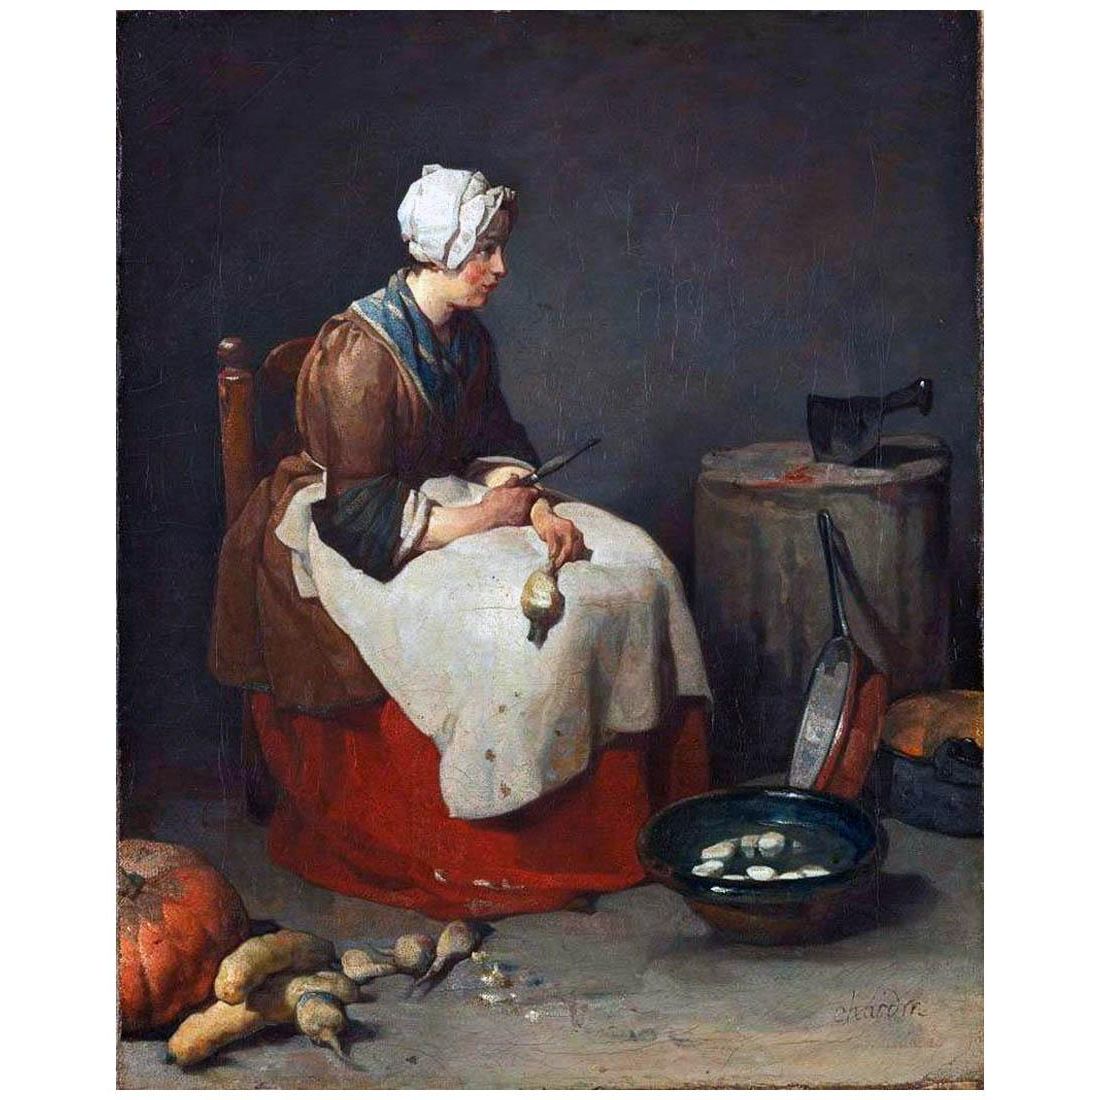 Jean-Baptiste Chardin. Femme epluchant les navets. 1740. Alte Pinakothek, Munchen